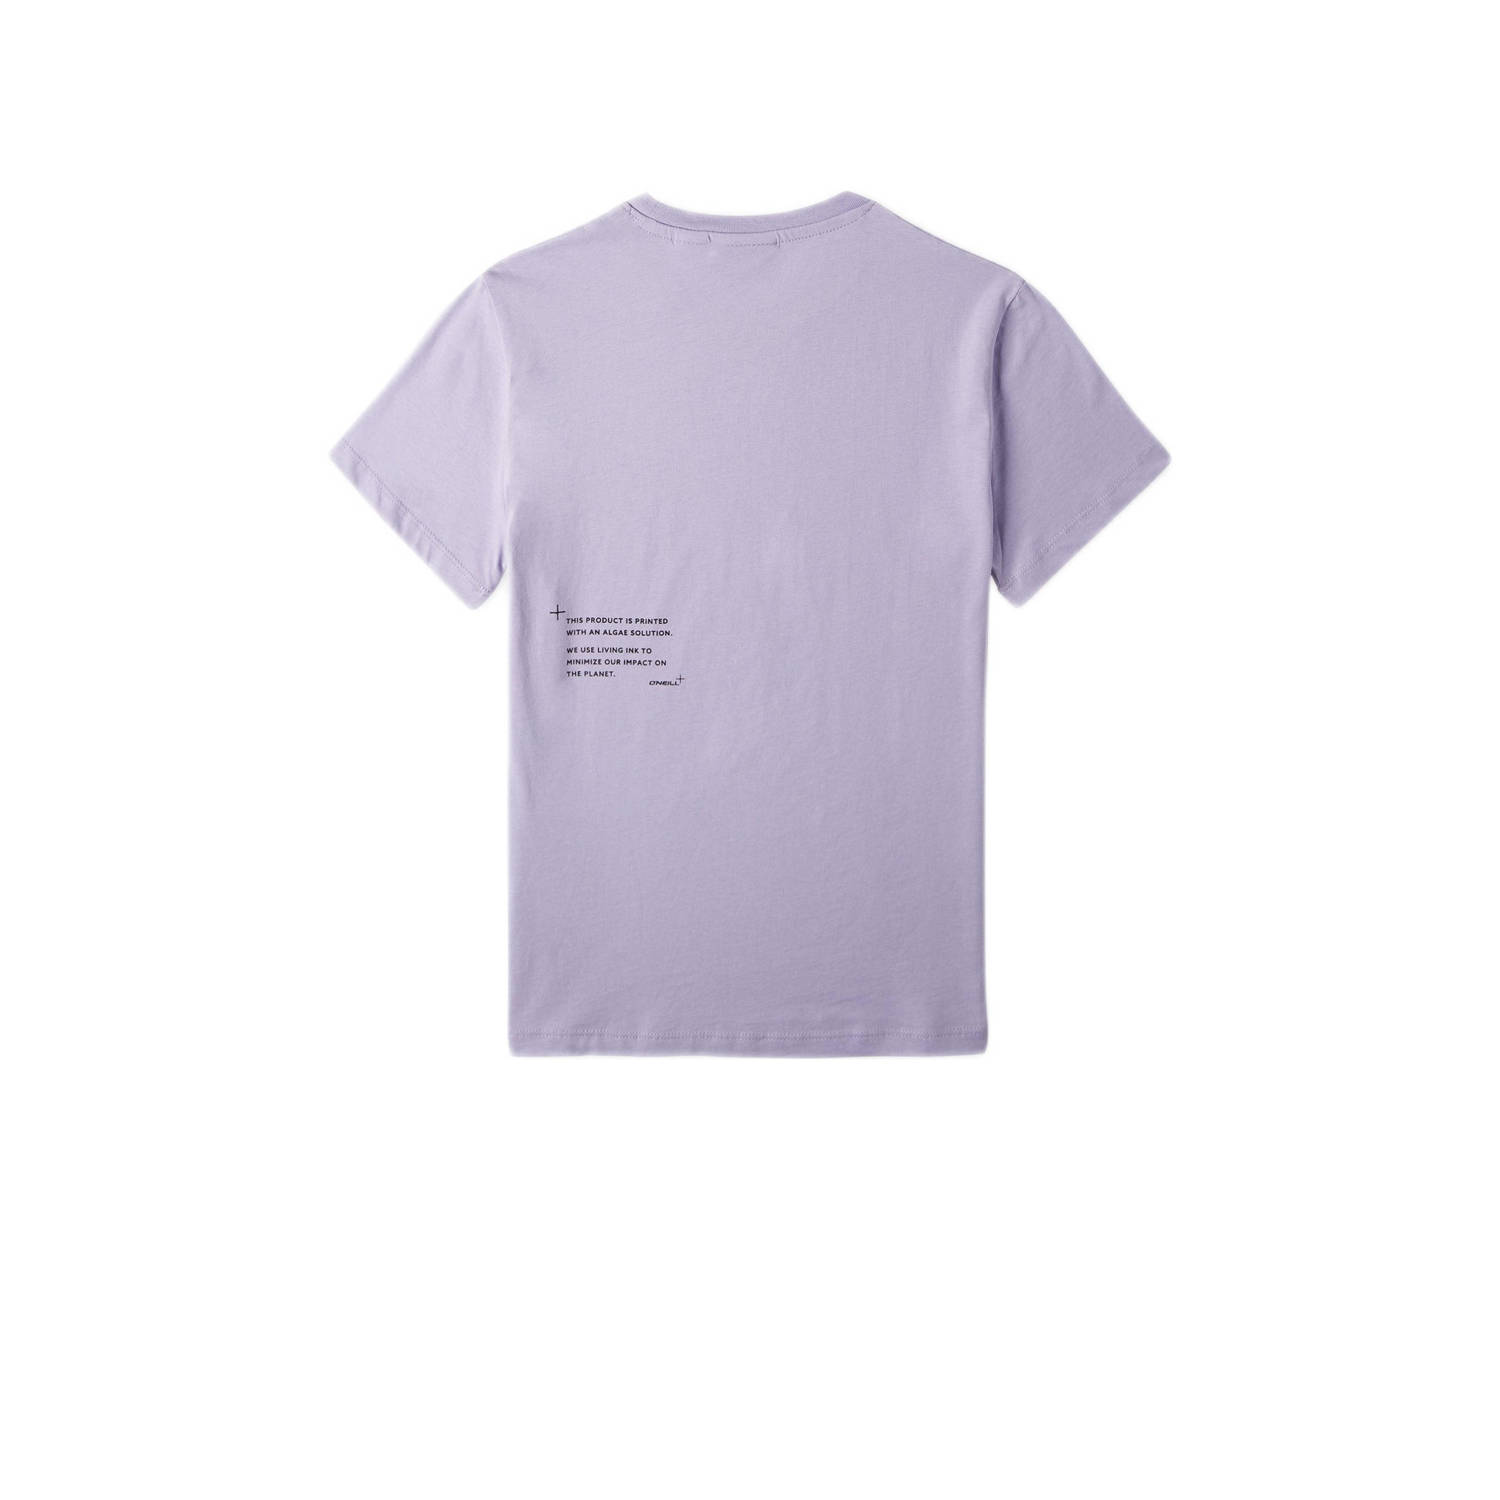 O'Neill T-shirt met tekst lila